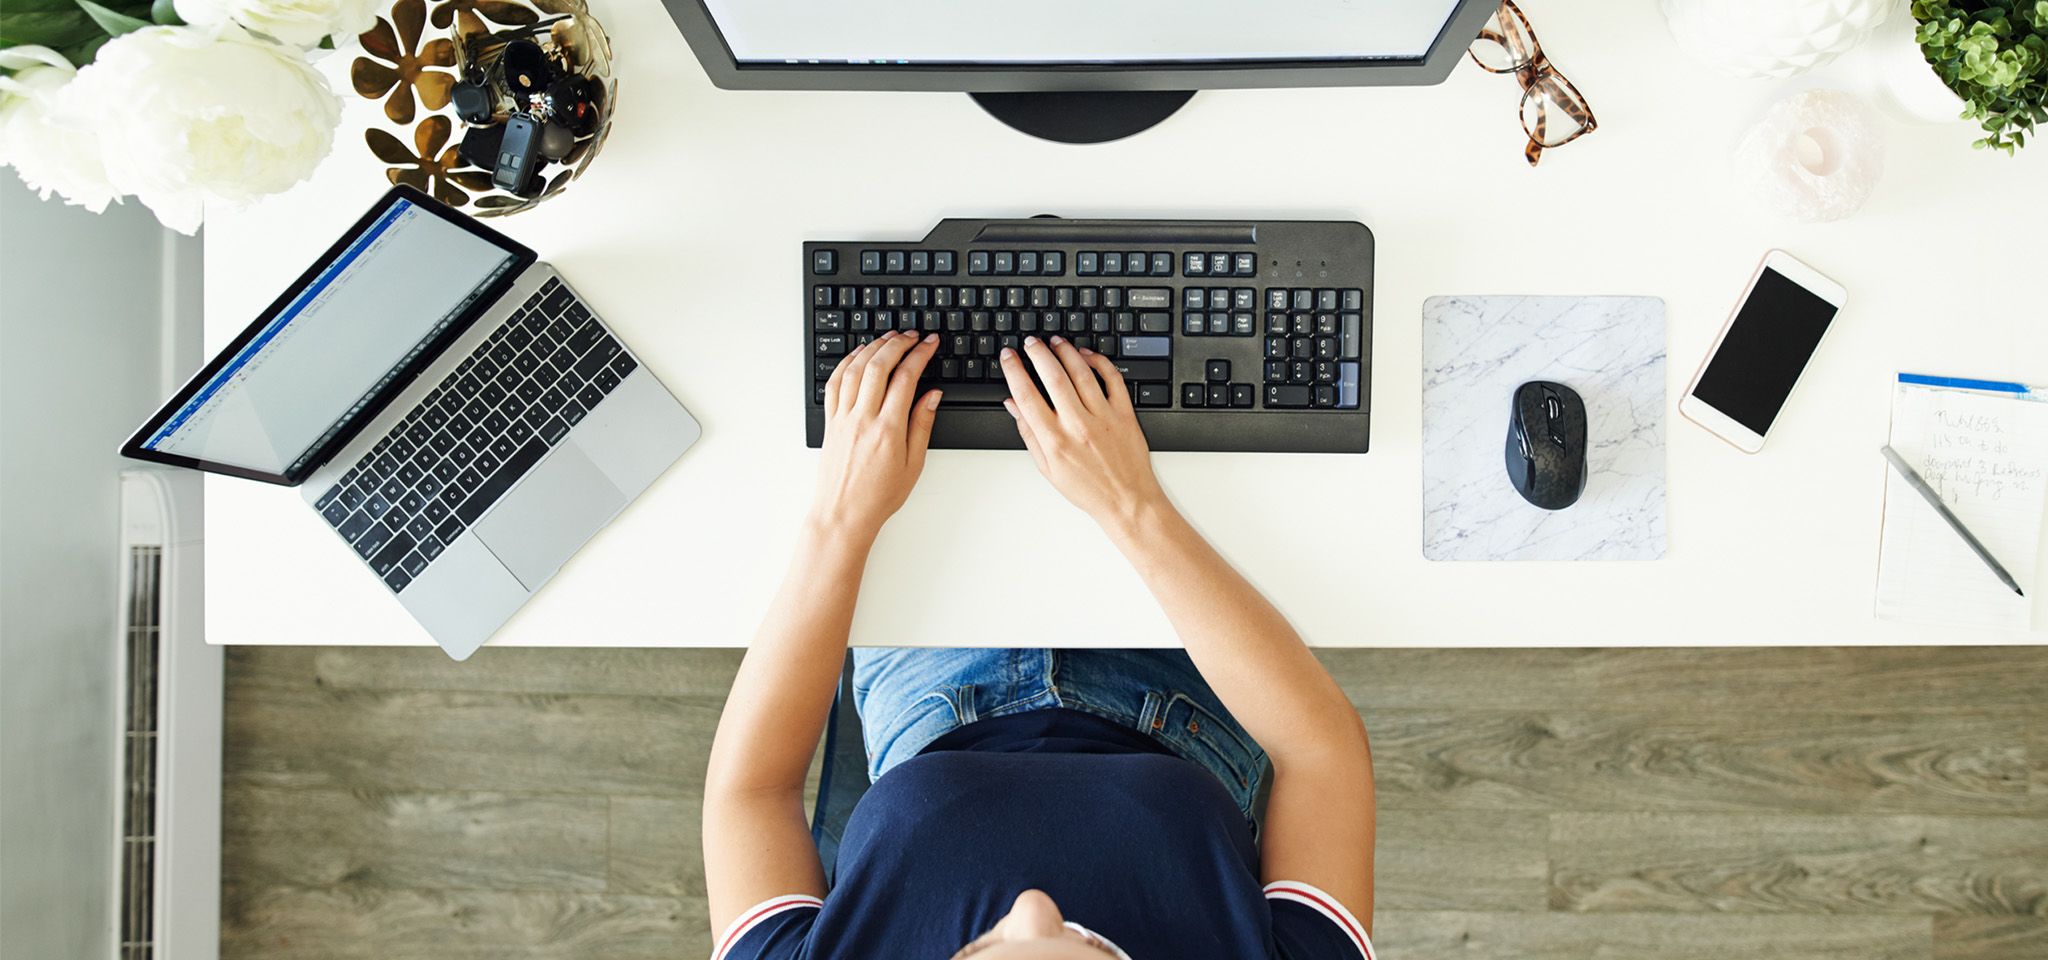 Cảnh nhìn từ trên cao, có bàn tay một người đang gõ bàn phím máy tính bàn, và có màn hình, máy tính xách tay, chuột và điện thoại di động ở cạnh đó